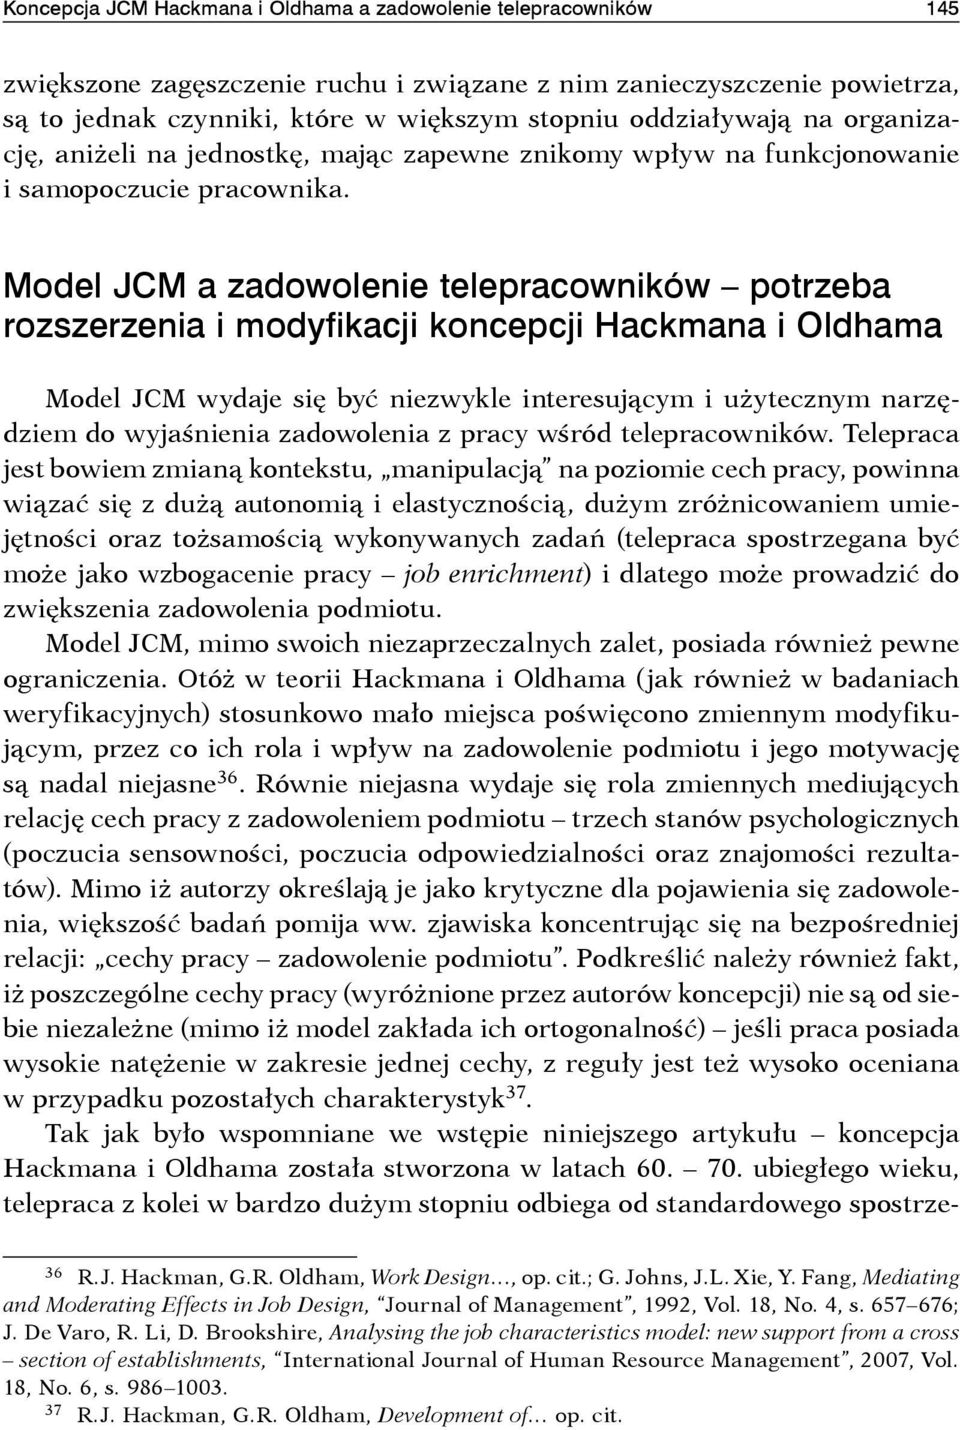 Model JCM a zadowolenie telepracowników potrzeba rozszerzenia i modyfikacji koncepcji Hackmana i Oldhama Model JCM wydaje się być niezwykle interesującym i użytecznym narzędziem do wyjaśnienia